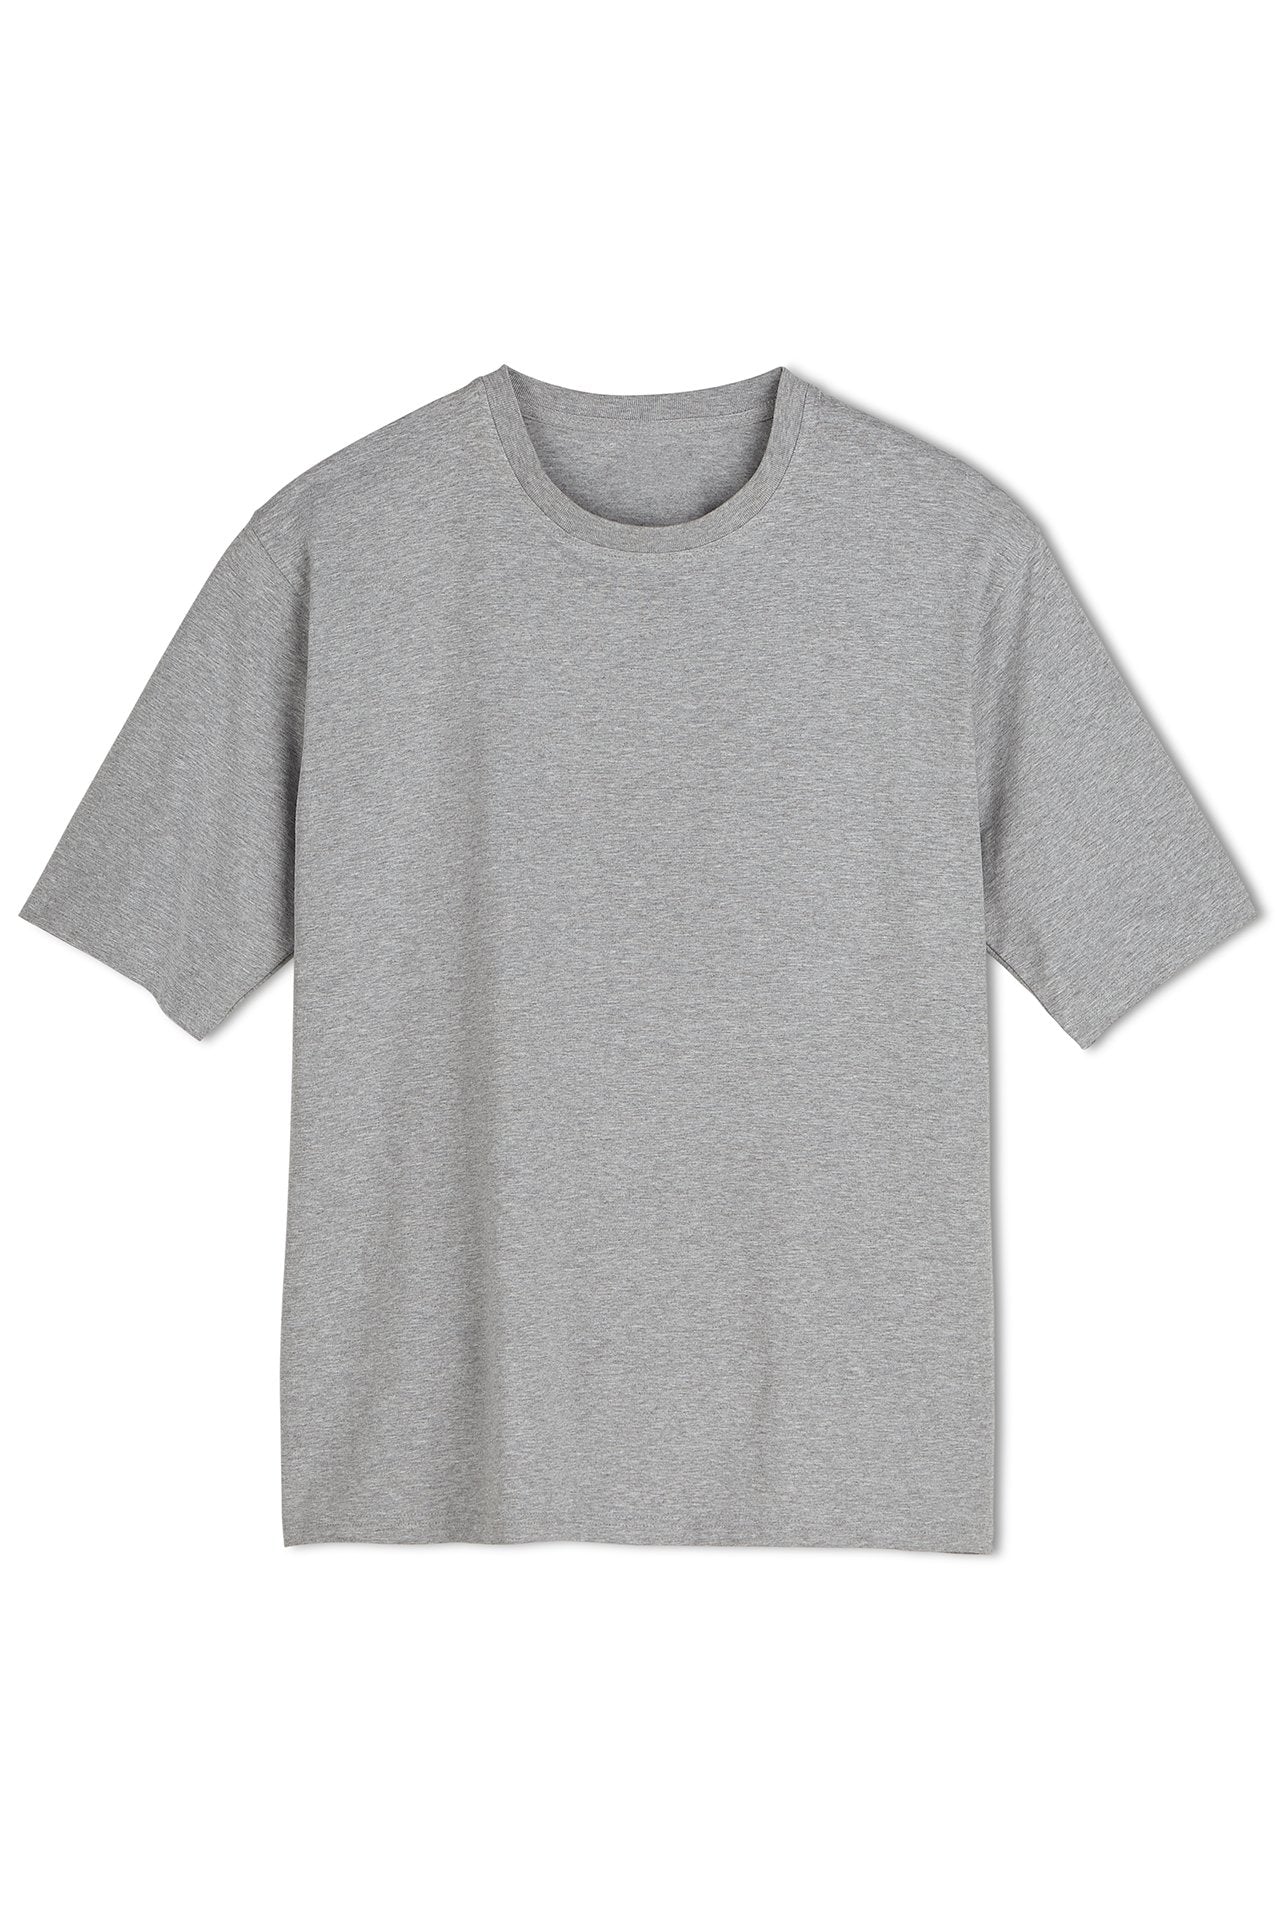 Coolibar - UV-beschermend shirt heren - grijs